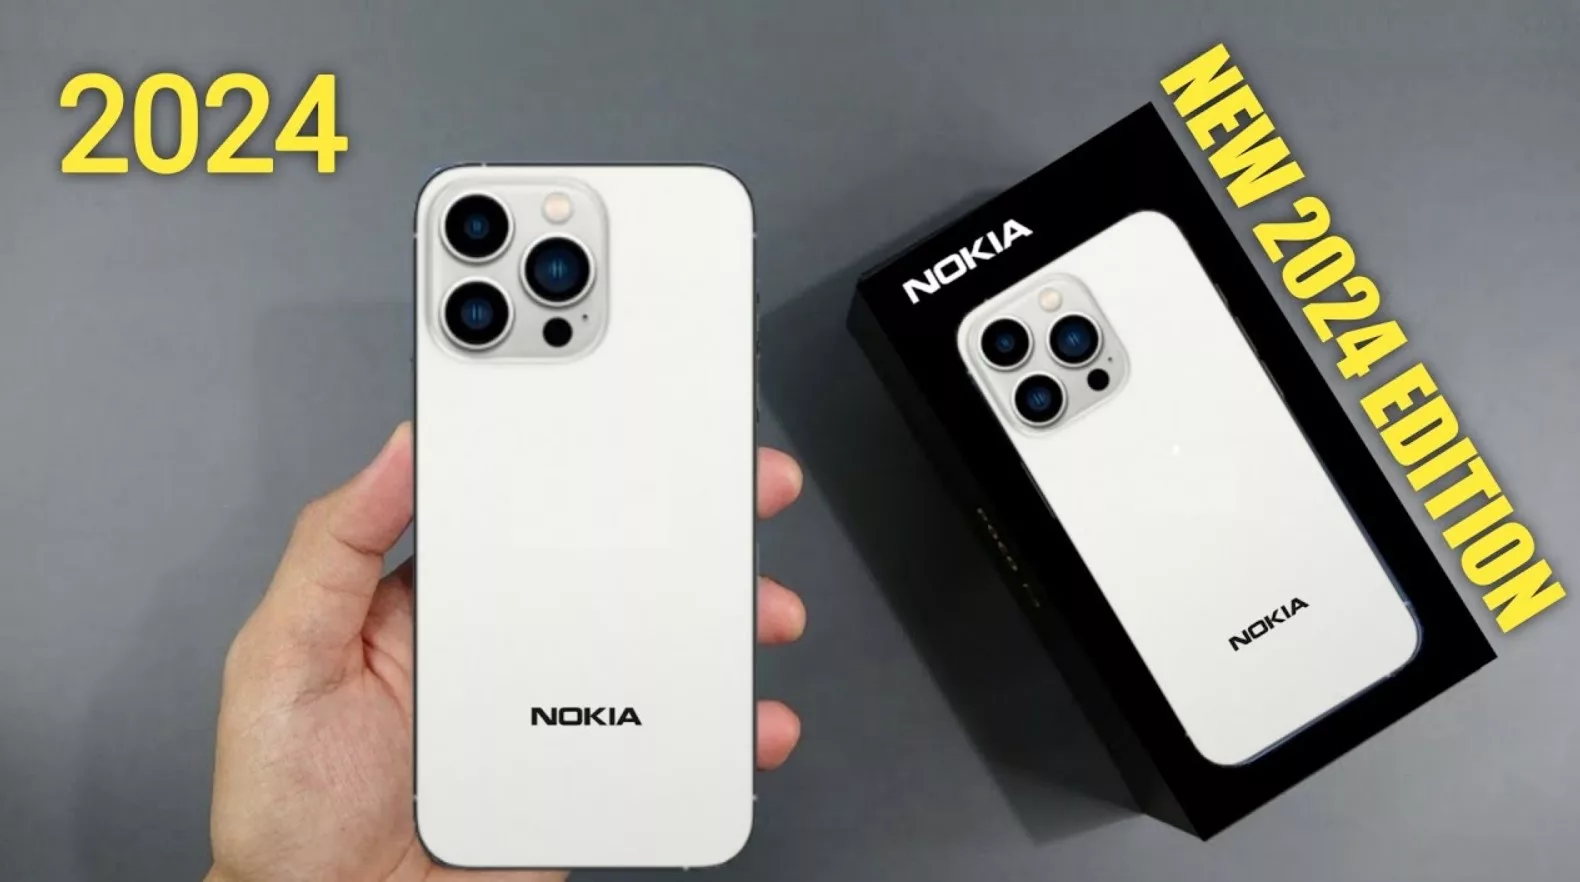 Nokia C12